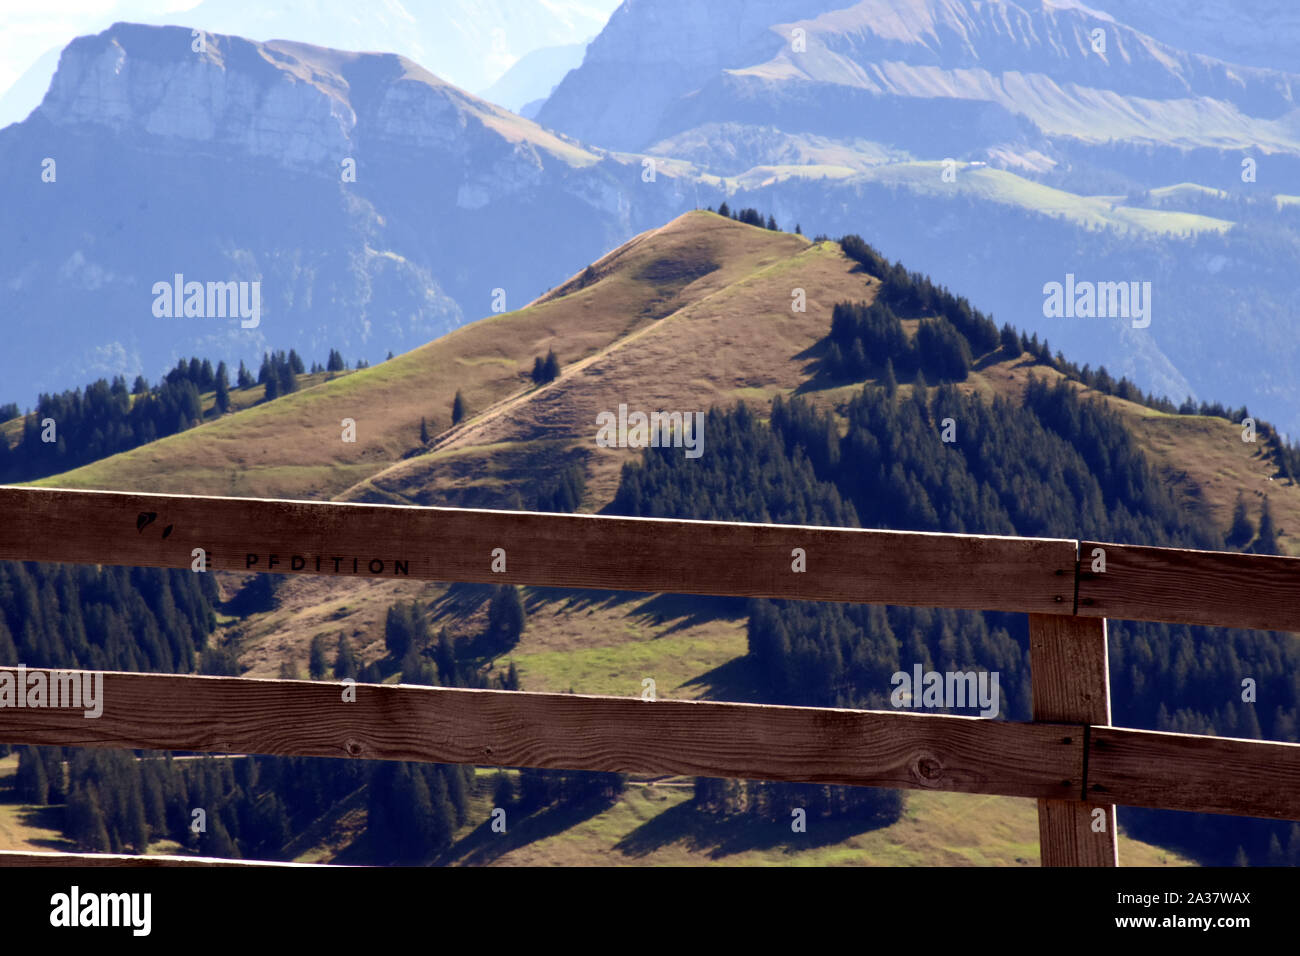 Vue panoramique vue paysage de prairies, de montagnes et de pics enneigés de la Montagne Rigi Kulm, haut de Mont Rigi en Suisse Banque D'Images